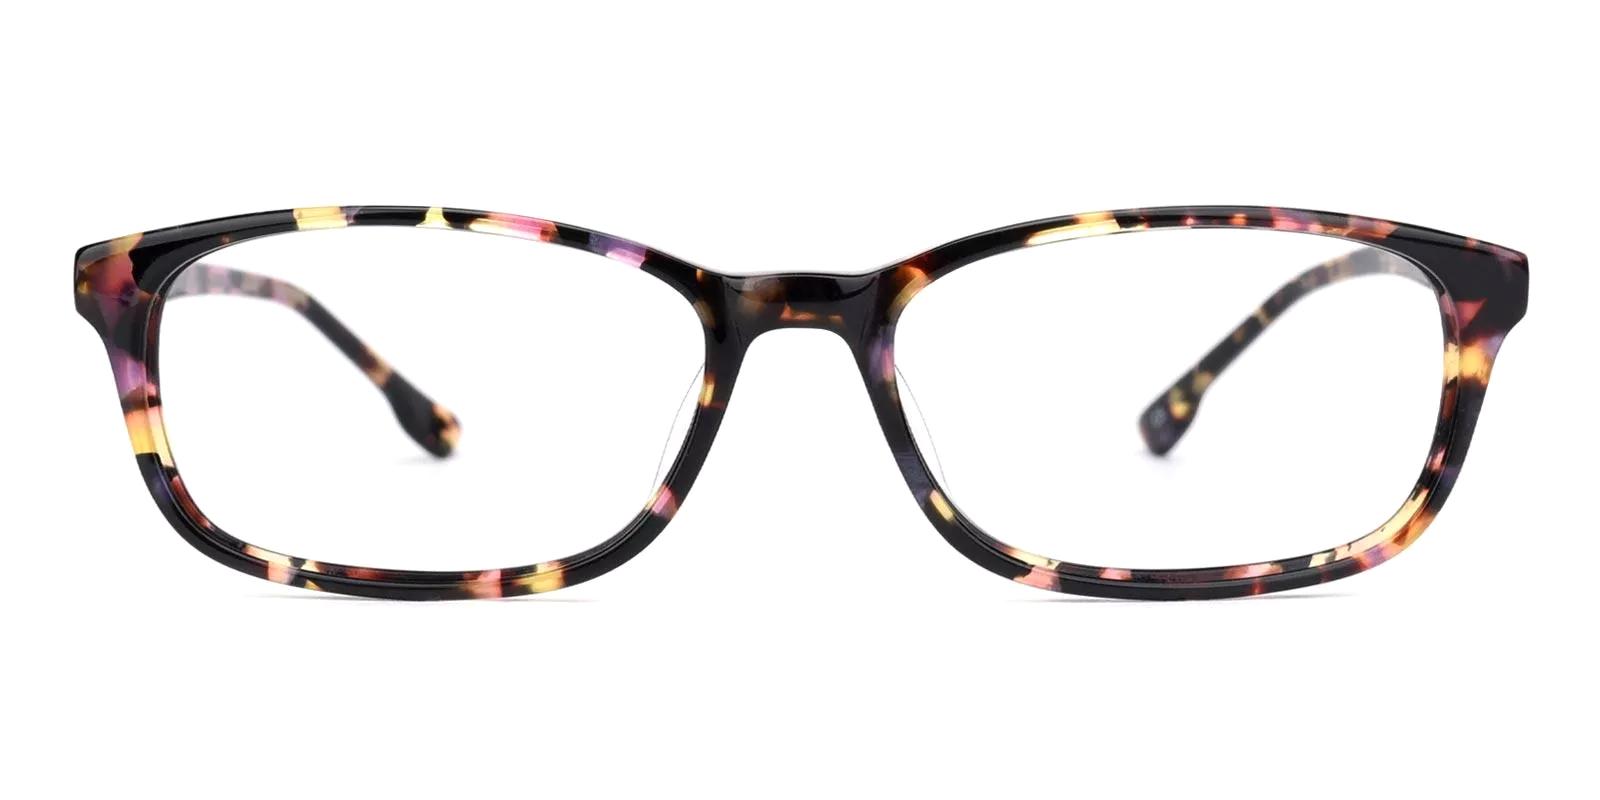 Tendant Pattern Acetate Eyeglasses , UniversalBridgeFit Frames from ABBE Glasses